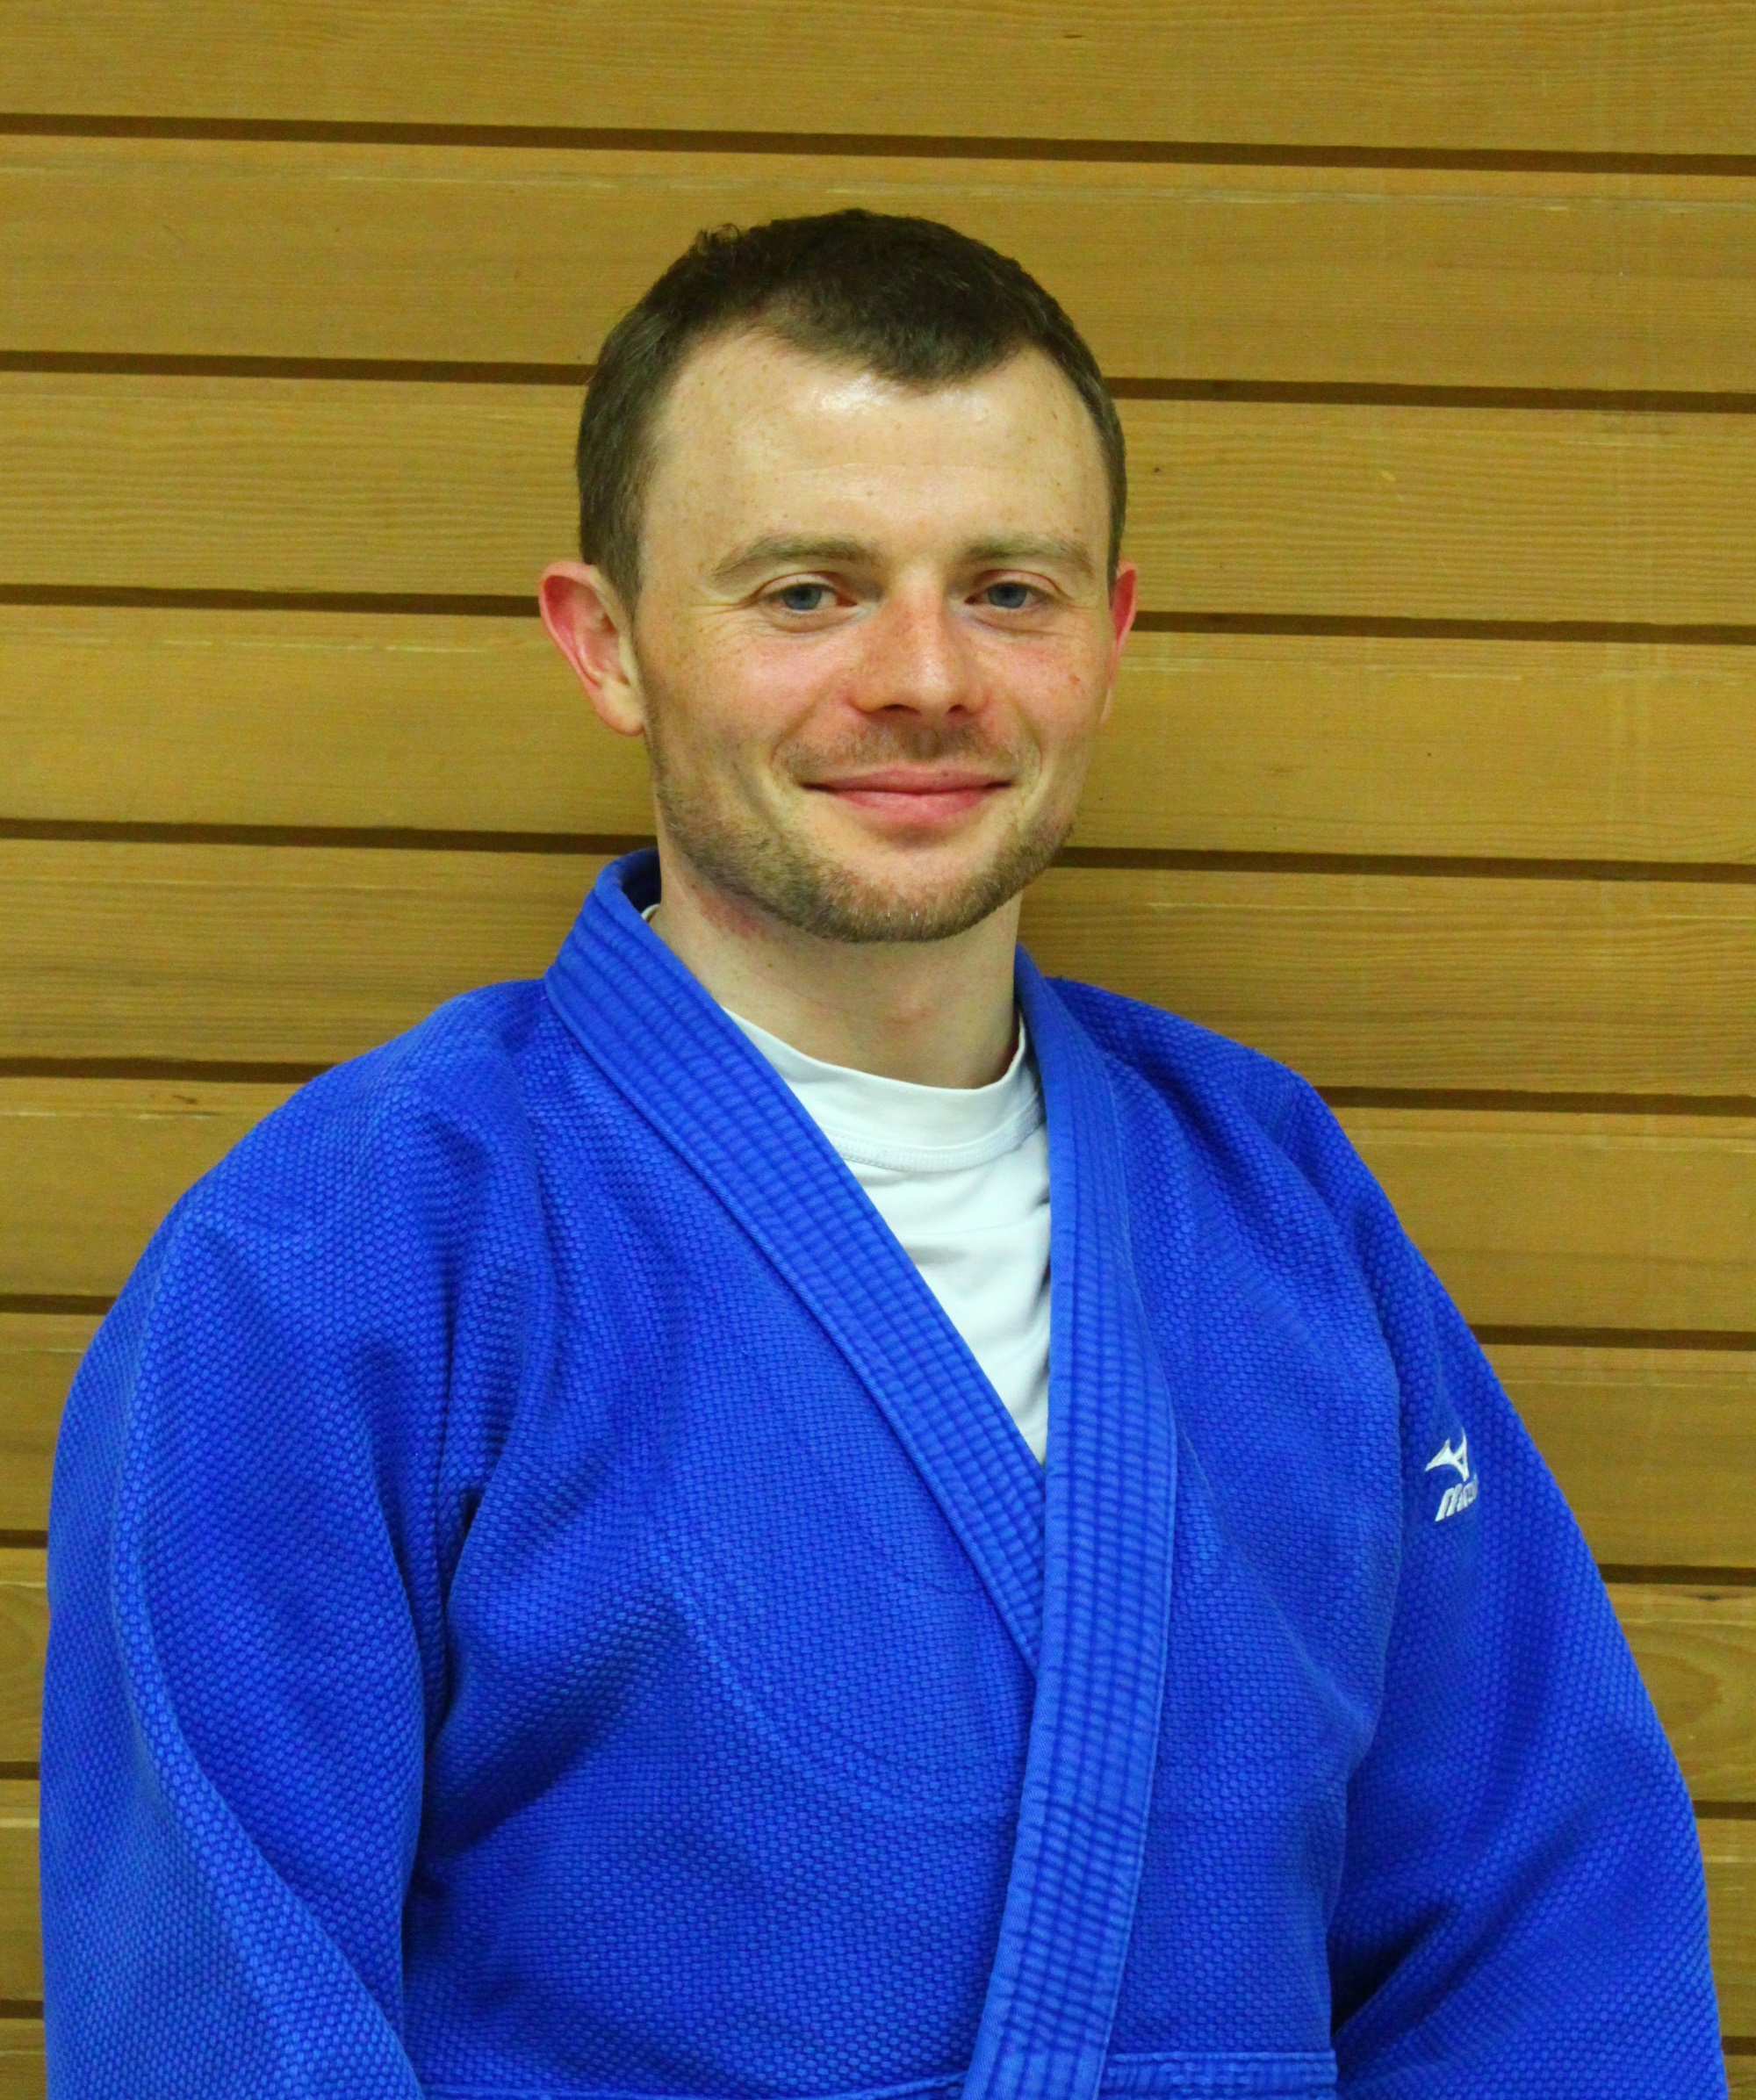 Porträ von Florian Braun, im Blauen Judo Anzug vor einer Holzwand.